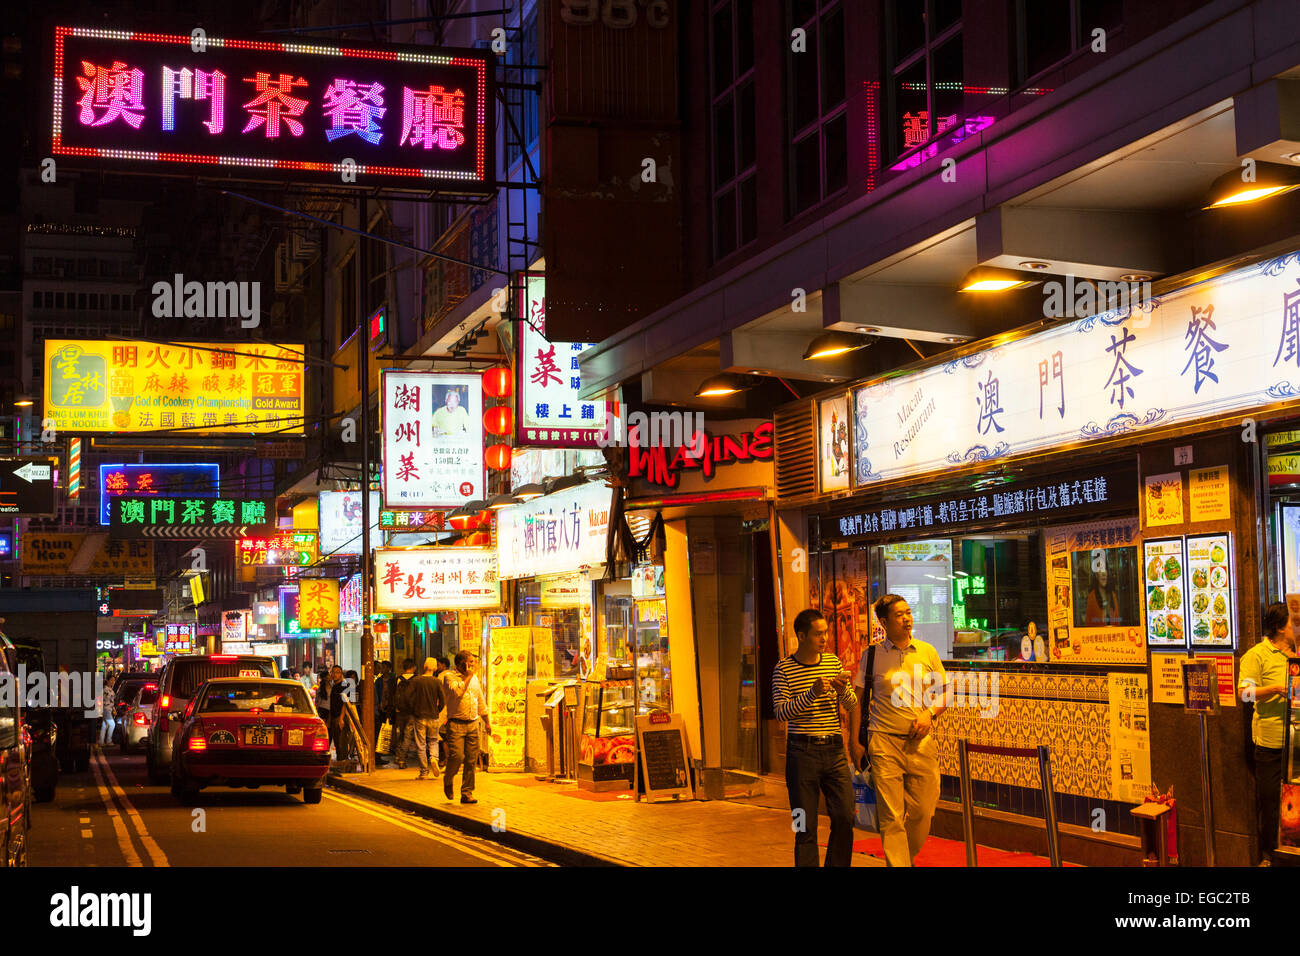 a street at night in Kowloon, Hong Kong Stock Photo